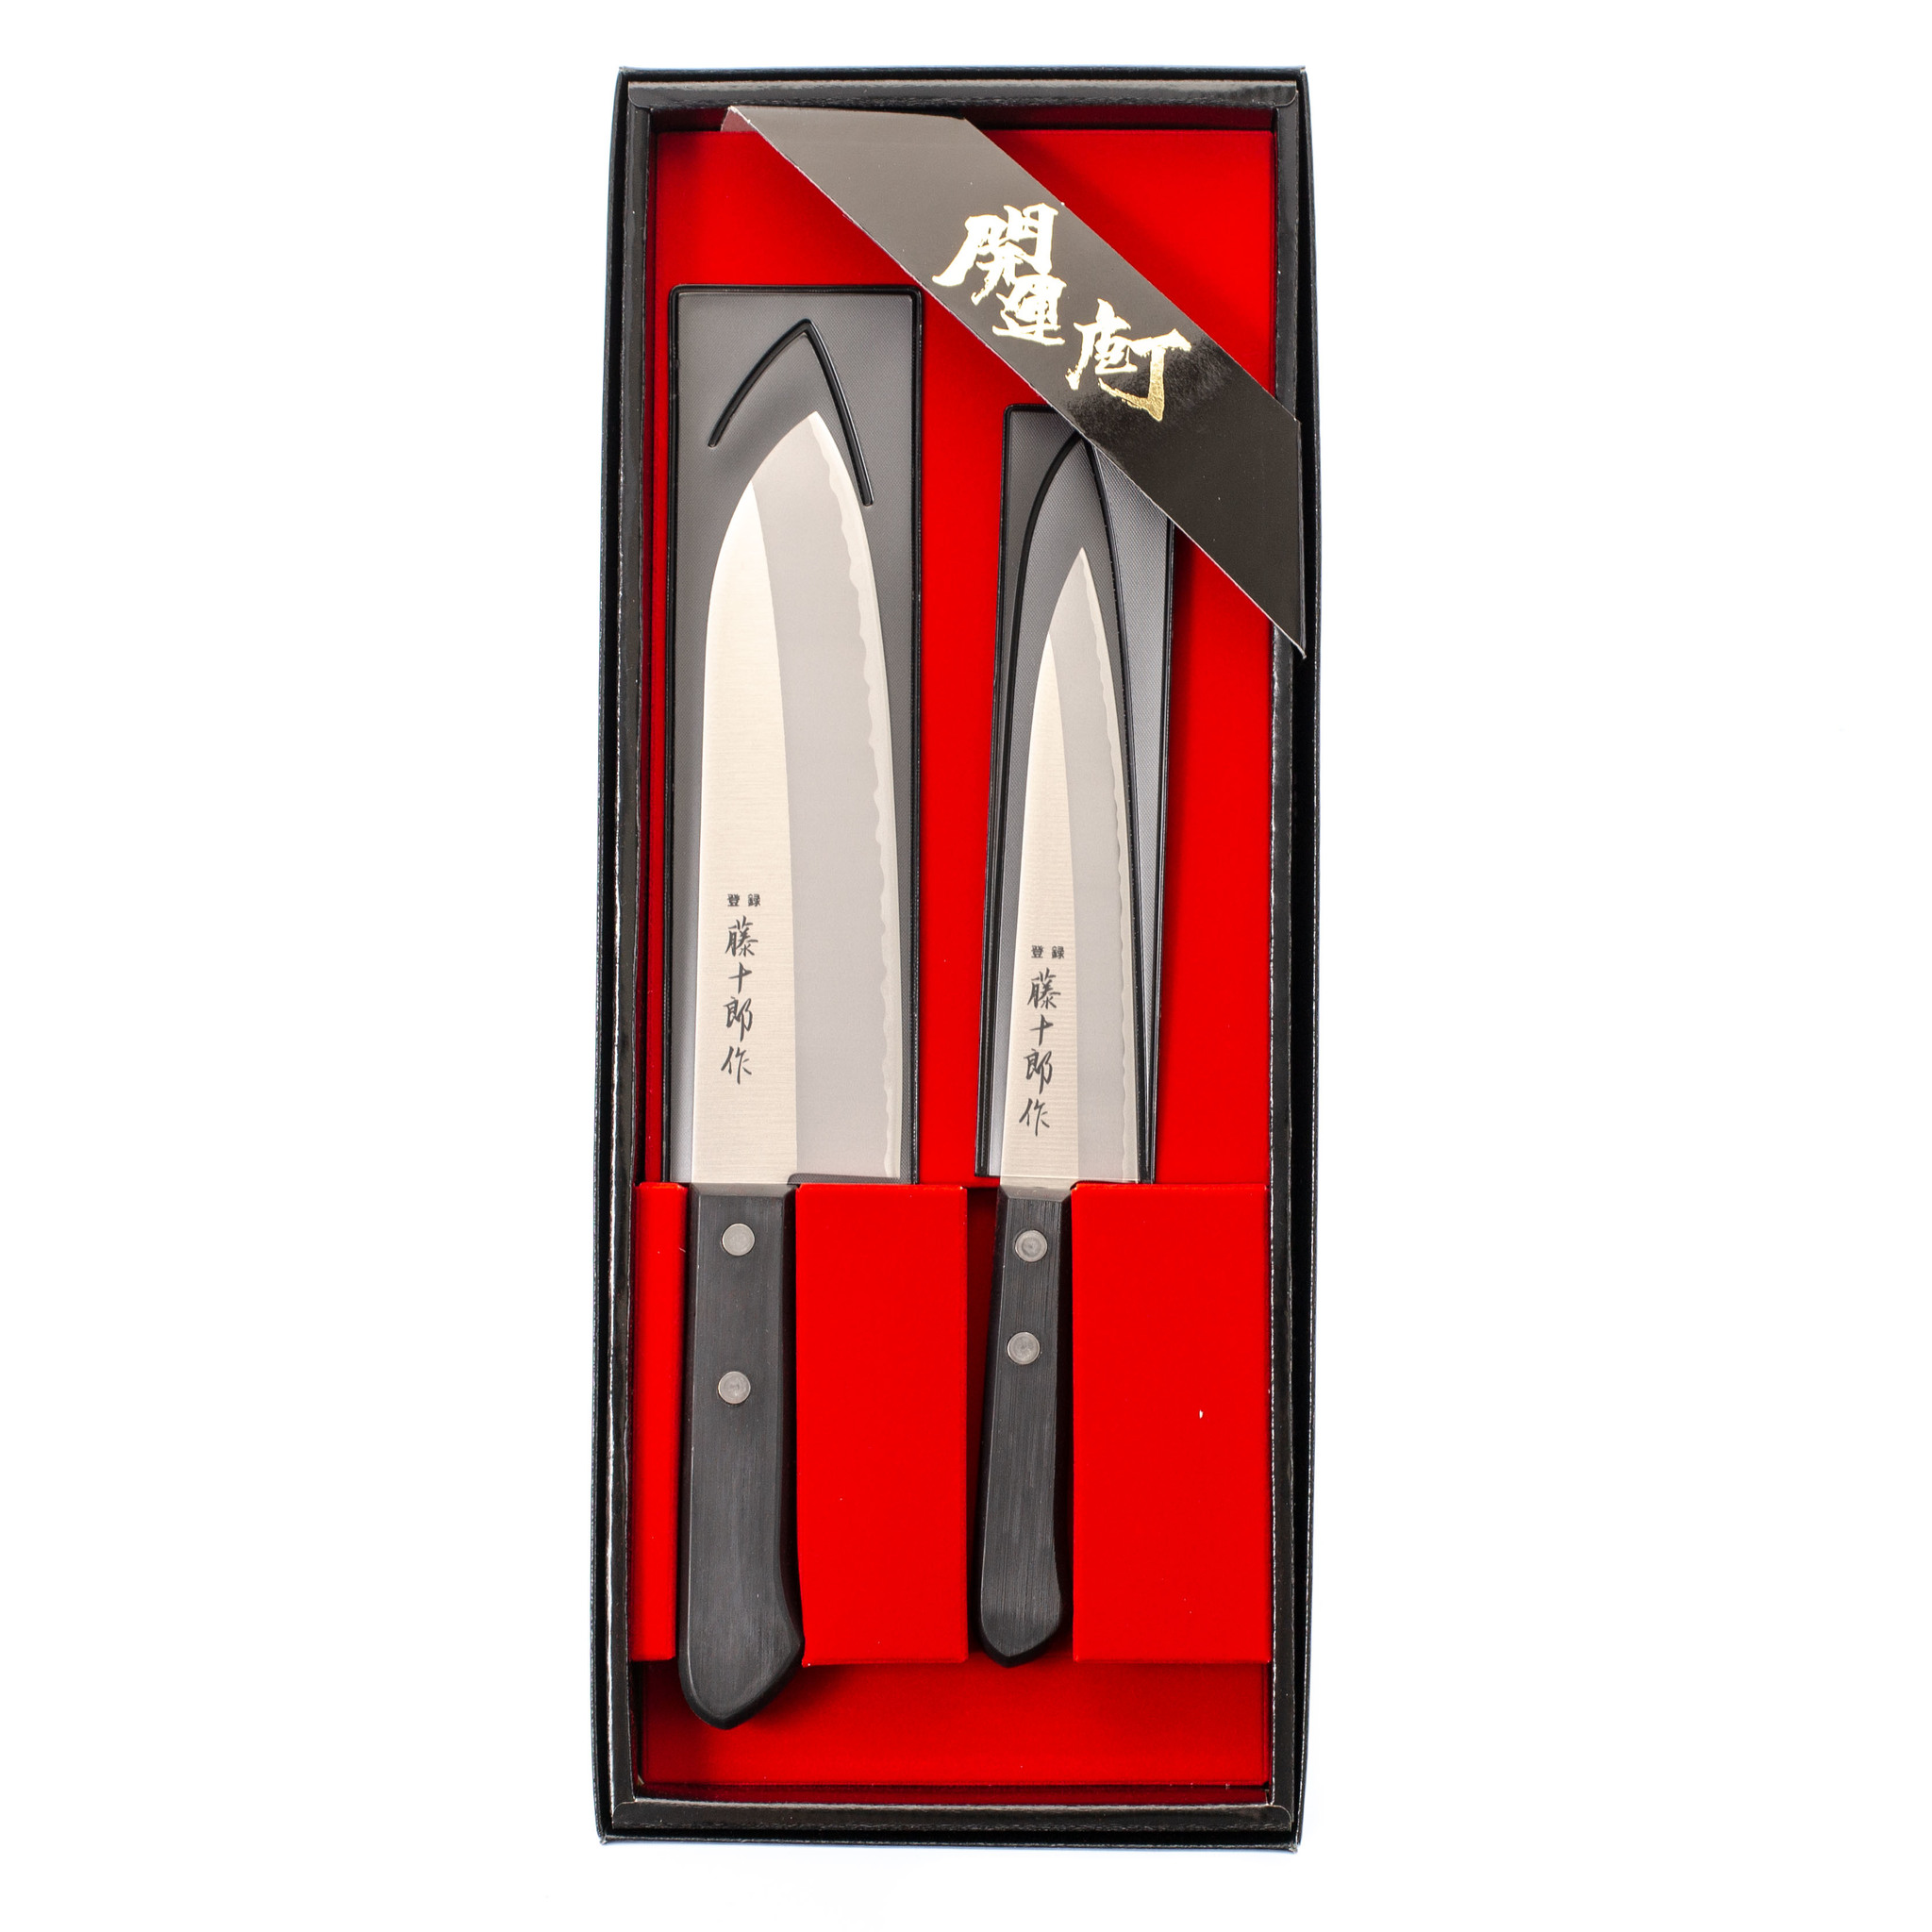 нож кухонный xin cutlery xc103 utility knife Набор из 2-х кухонных ножей Fuji Cutlery Tojiro, заточка #3000